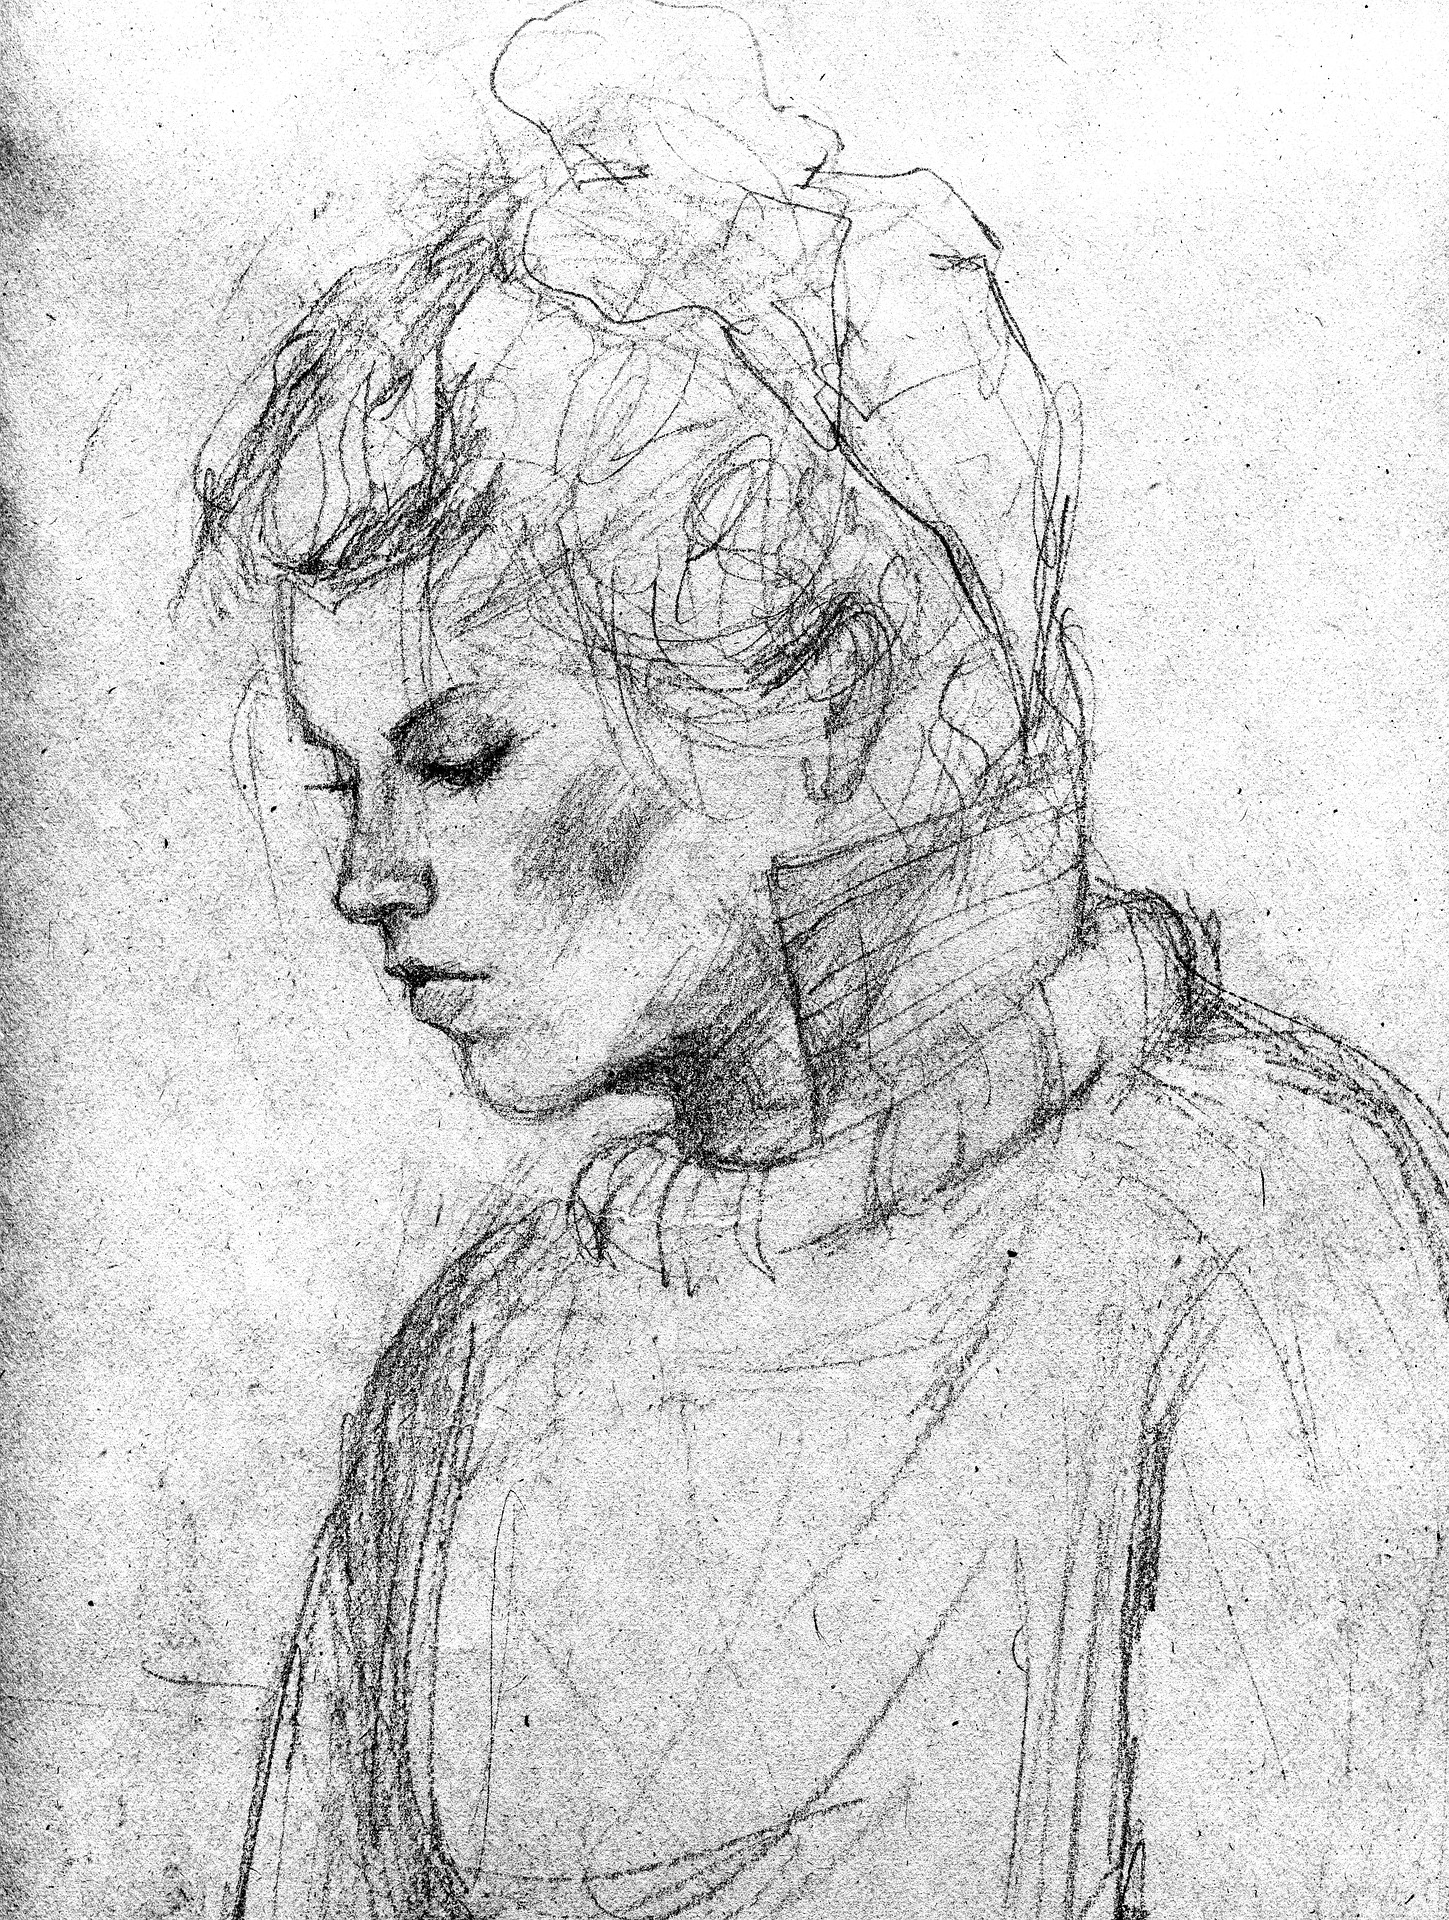 Vernon Community Arts Centre - Portrait & Human Figure Drawing: Ages 12-15